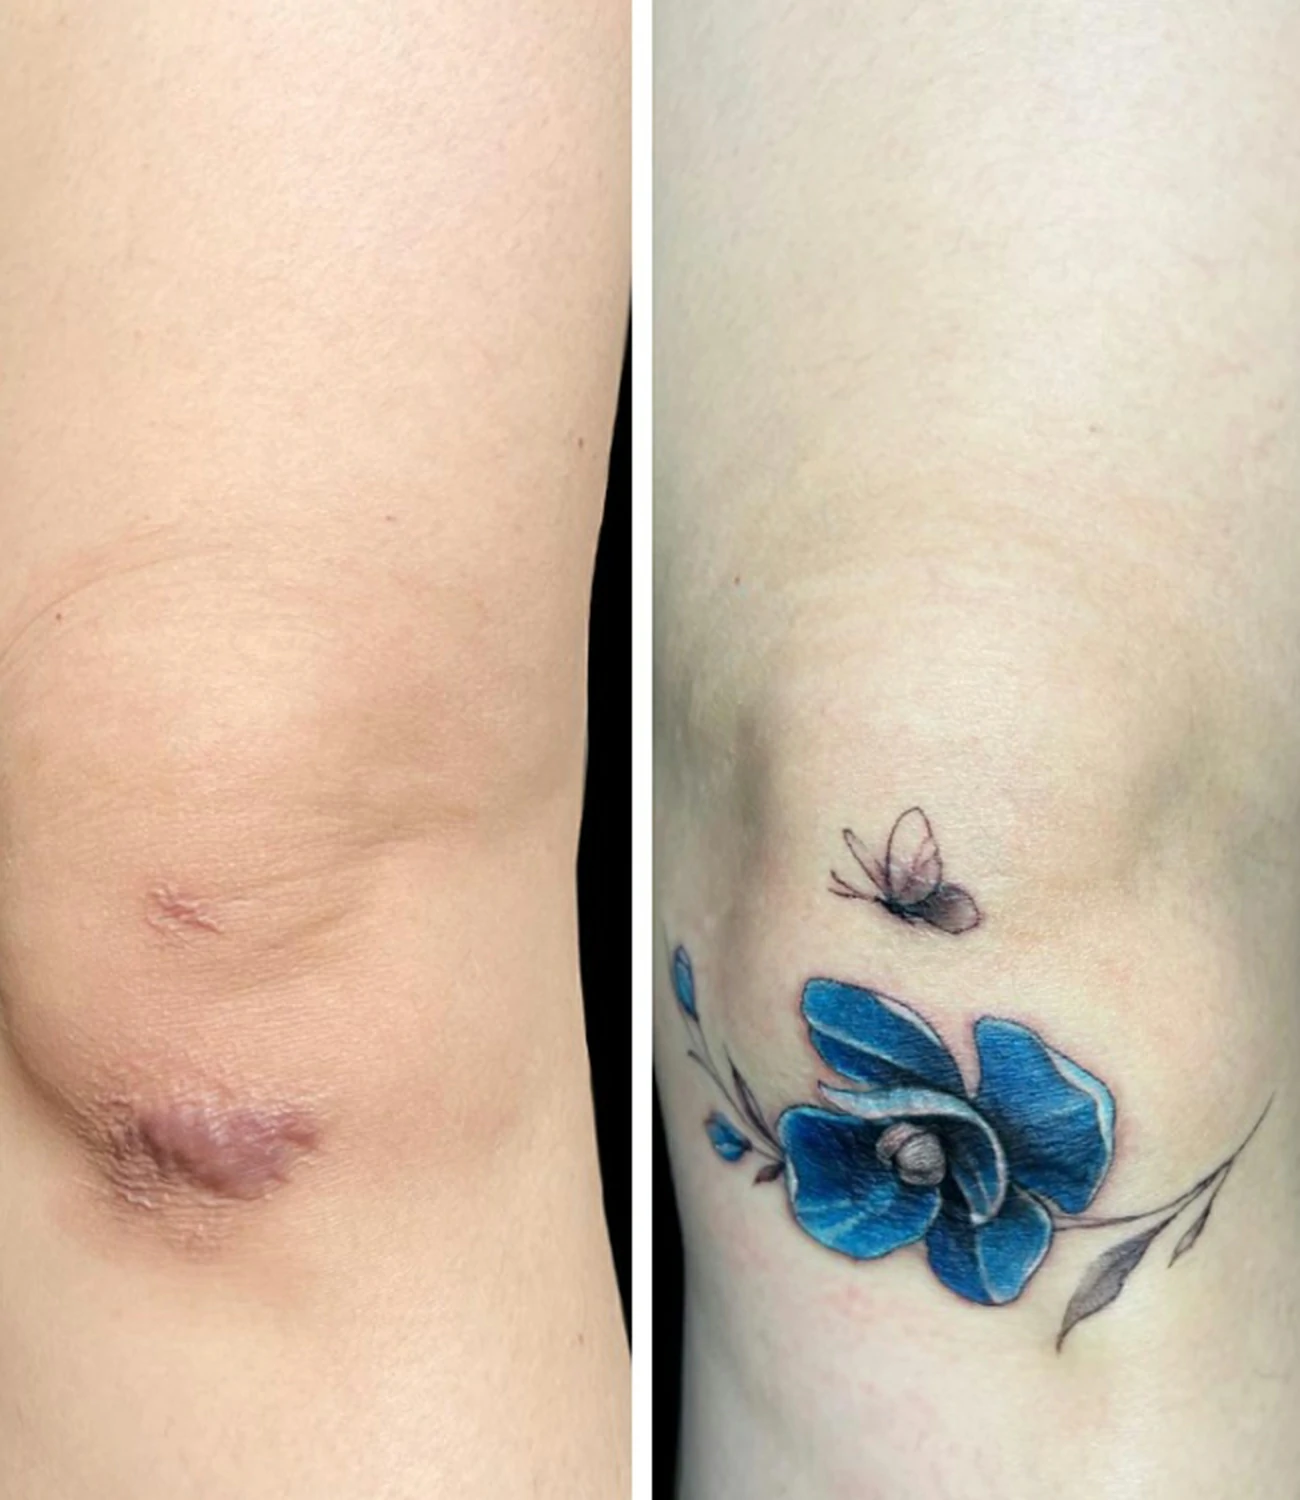 Knee Scar Tattoo